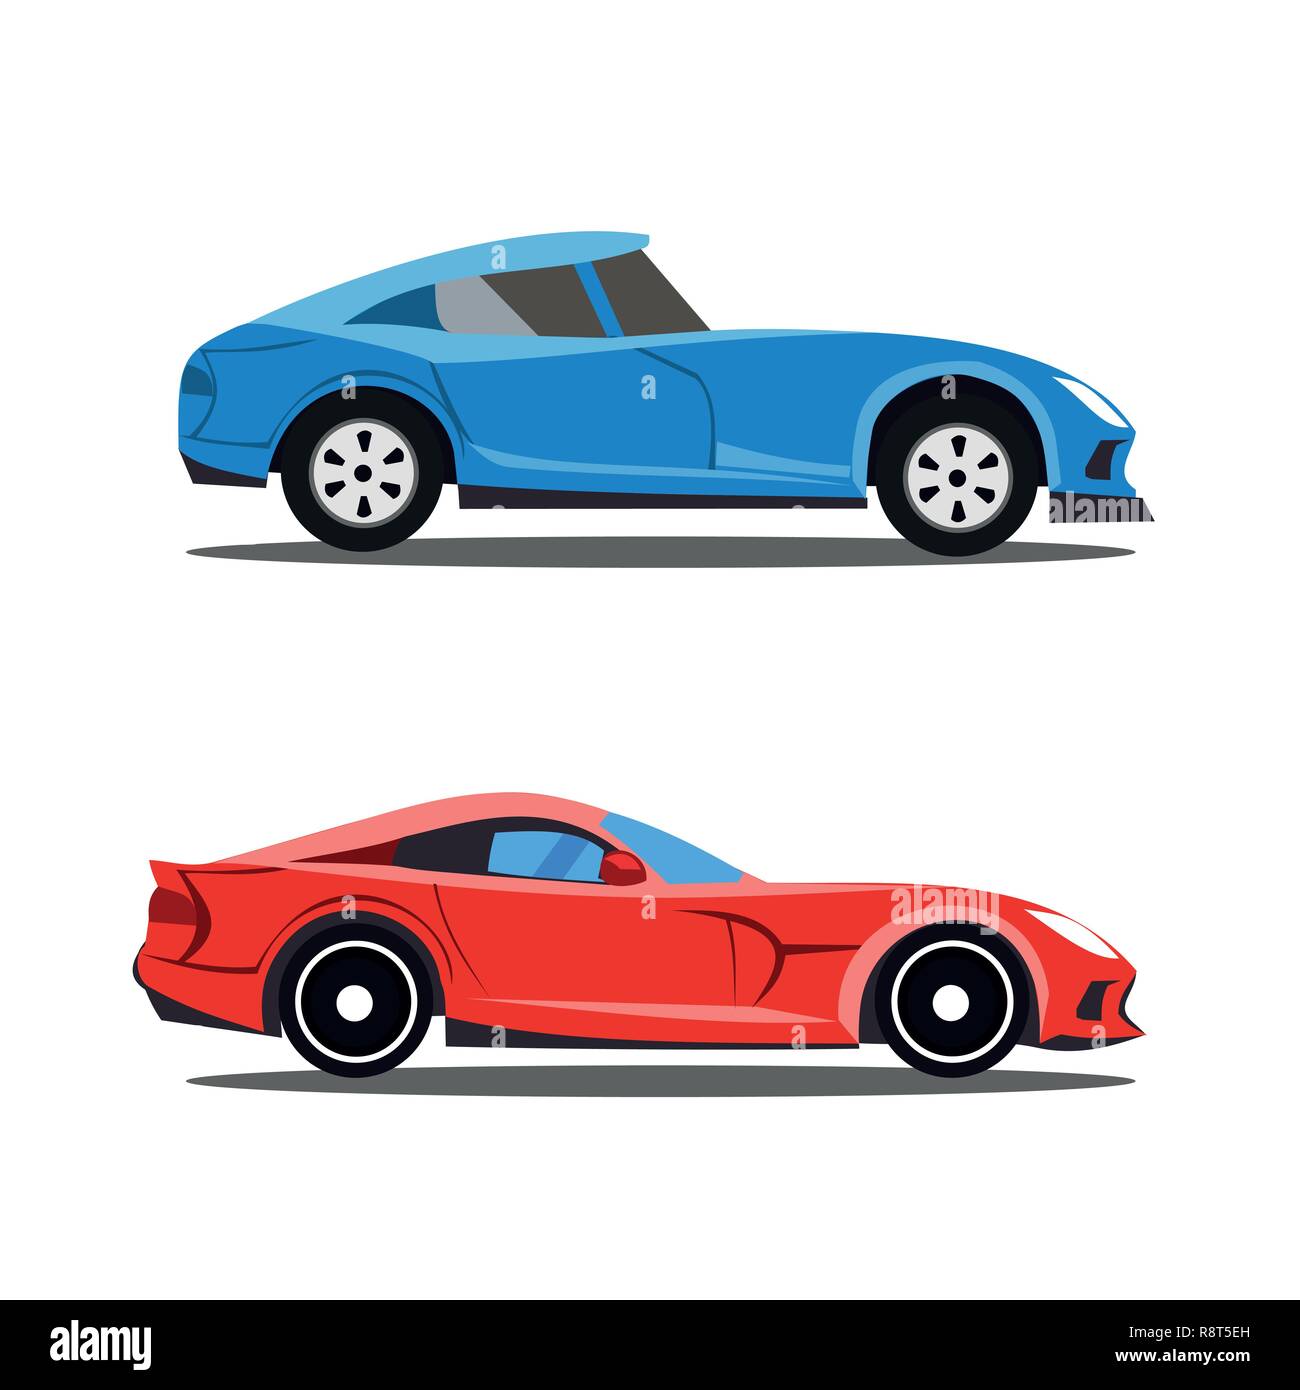 Profil de modèle de voitures, location de caricature dessins en vue de profil Illustration de Vecteur